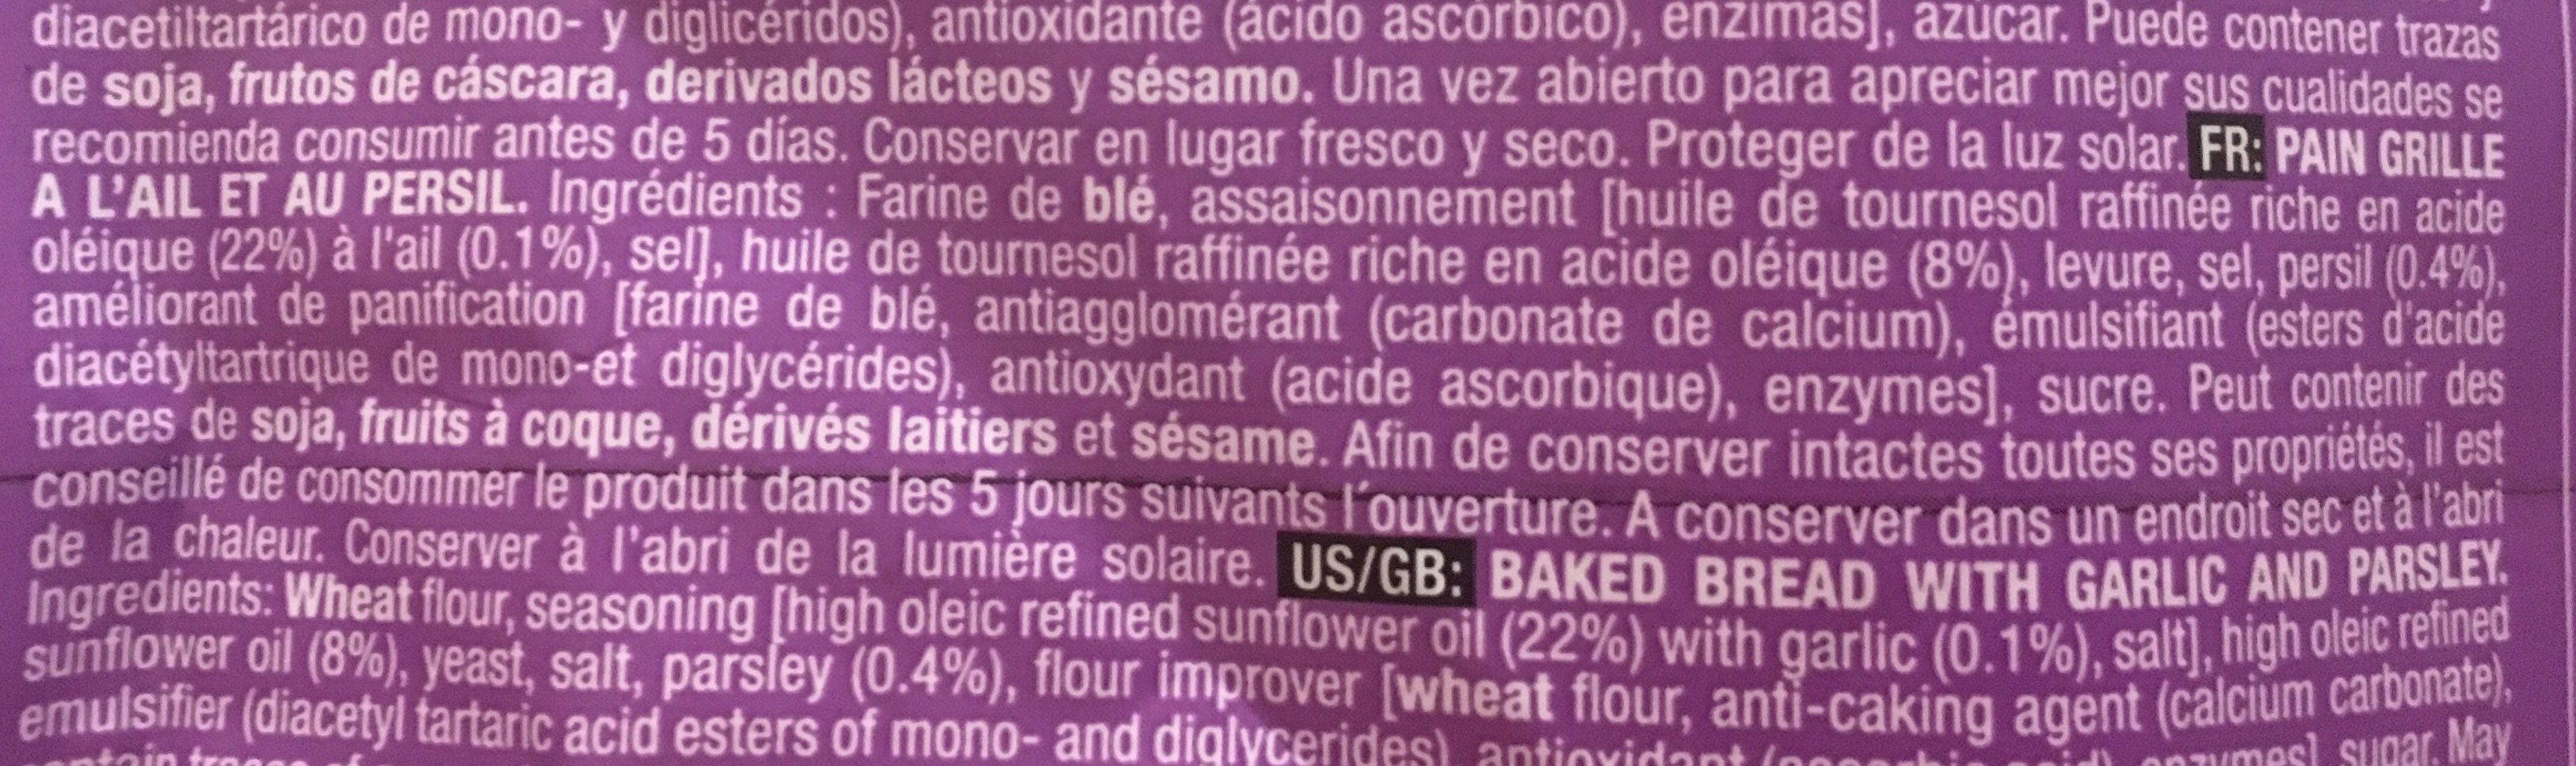 Pan con ajo garlic bread - Ingredients - fr